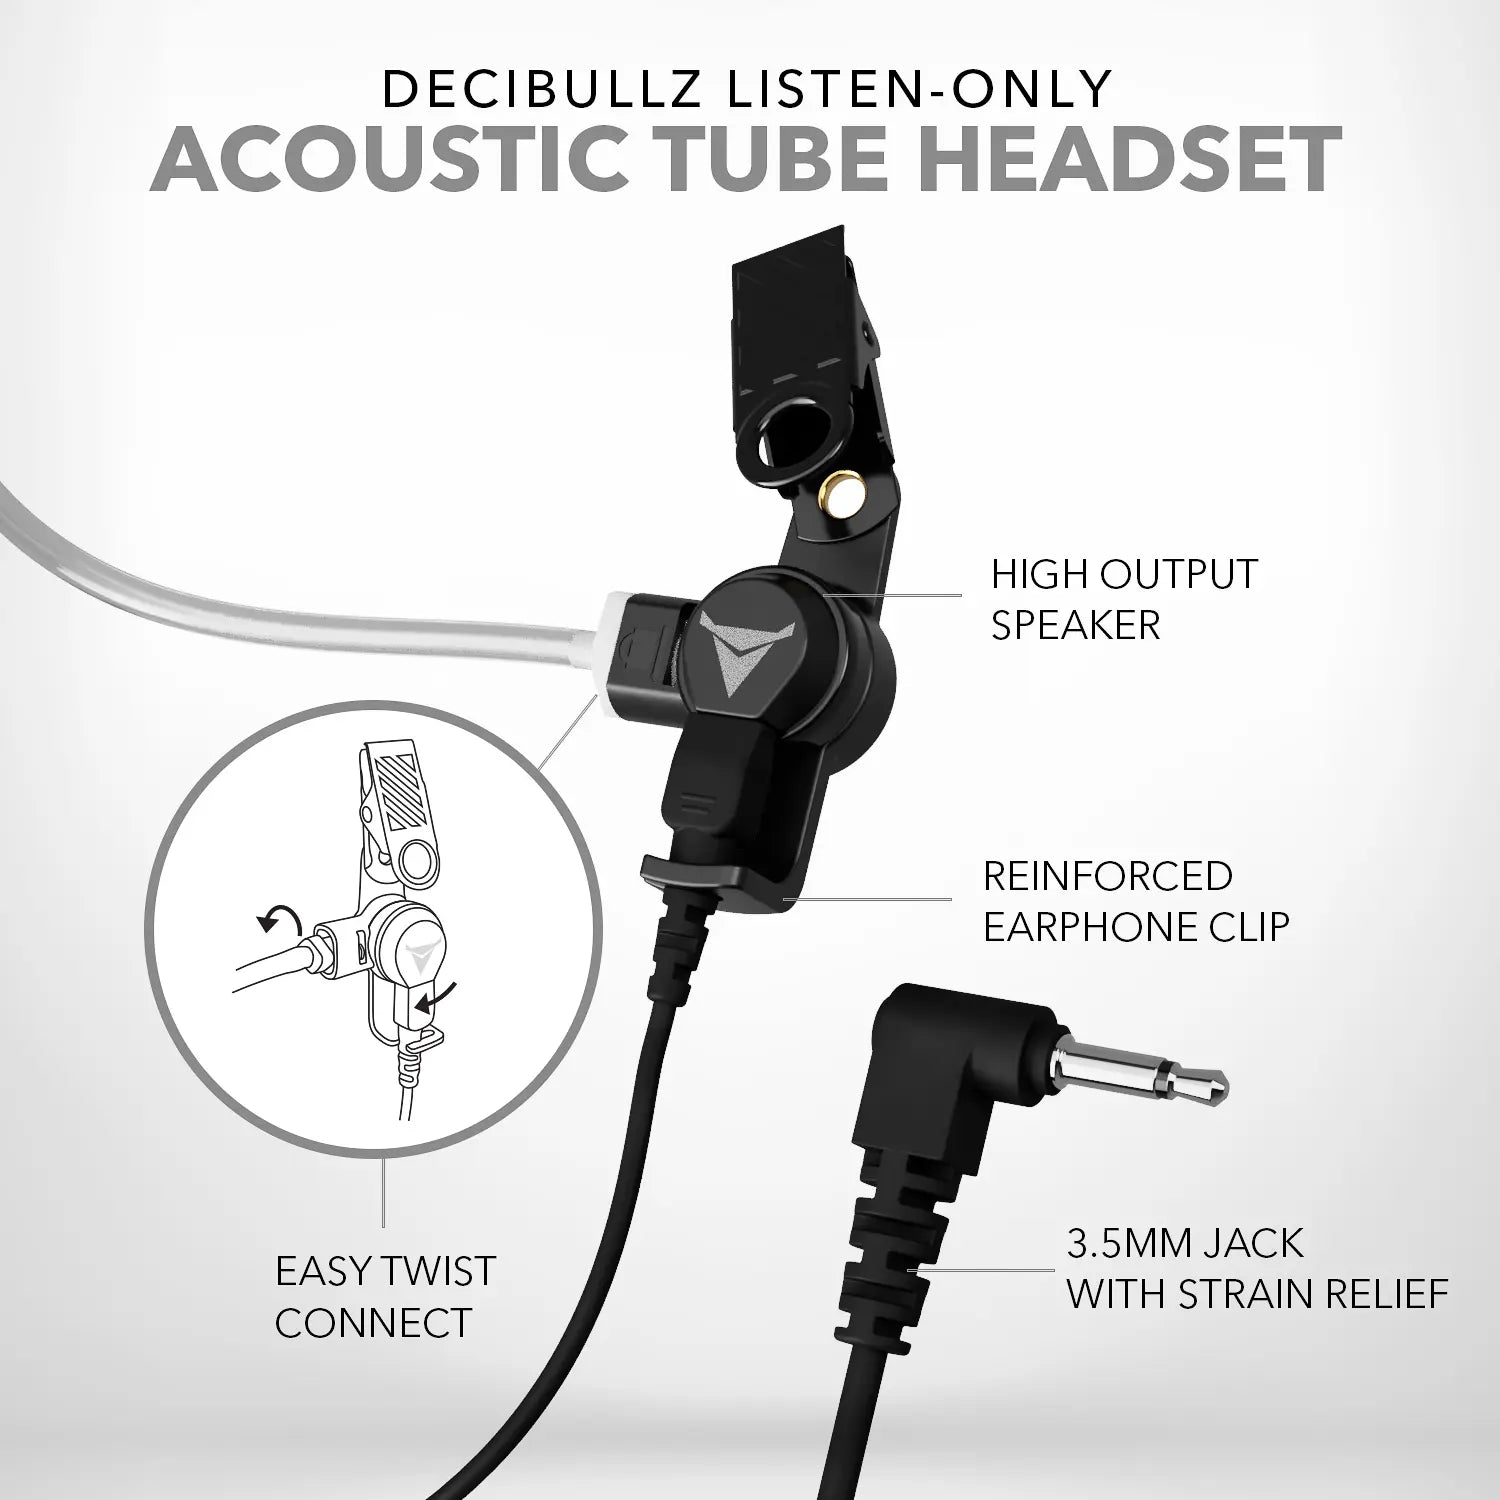 Premium Listen-Only Surveillance Acoustic Tube Headset